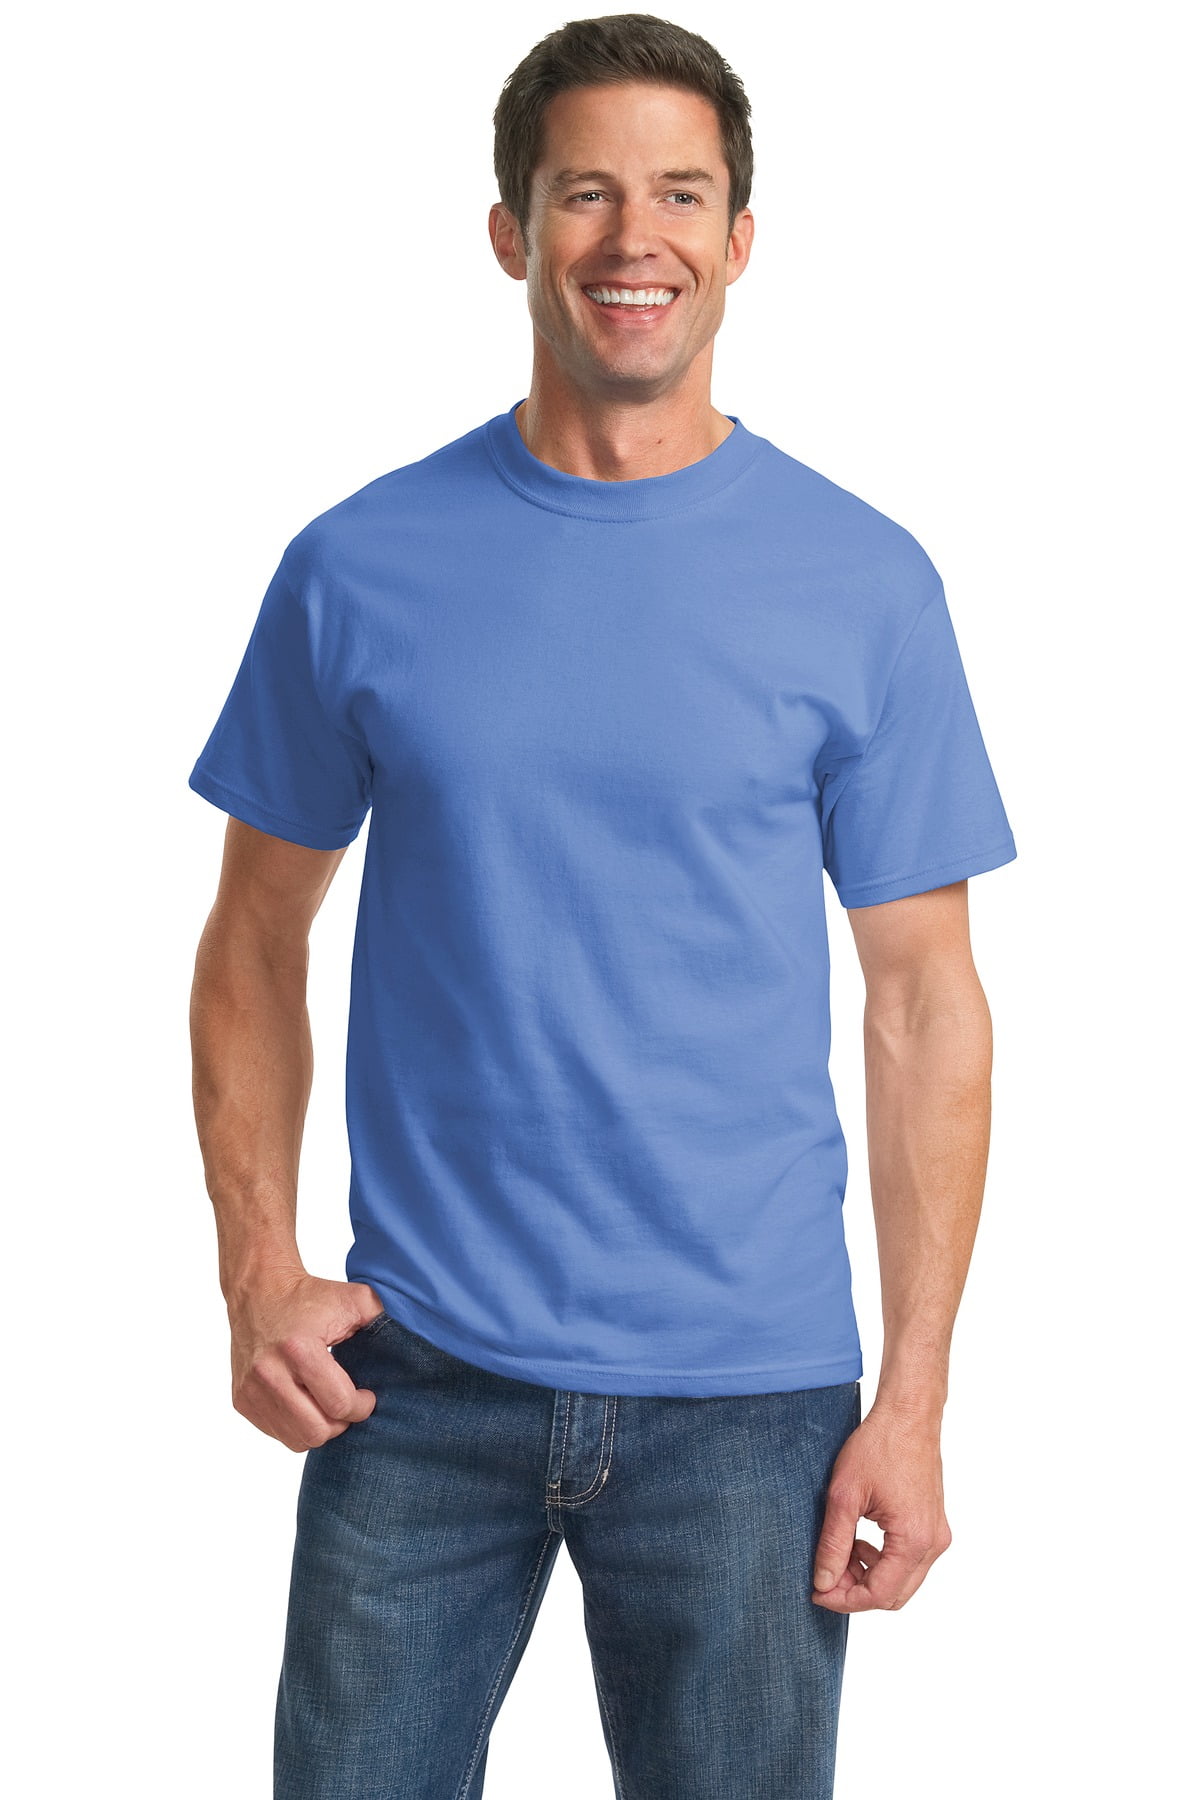 mens tall athletic shirts